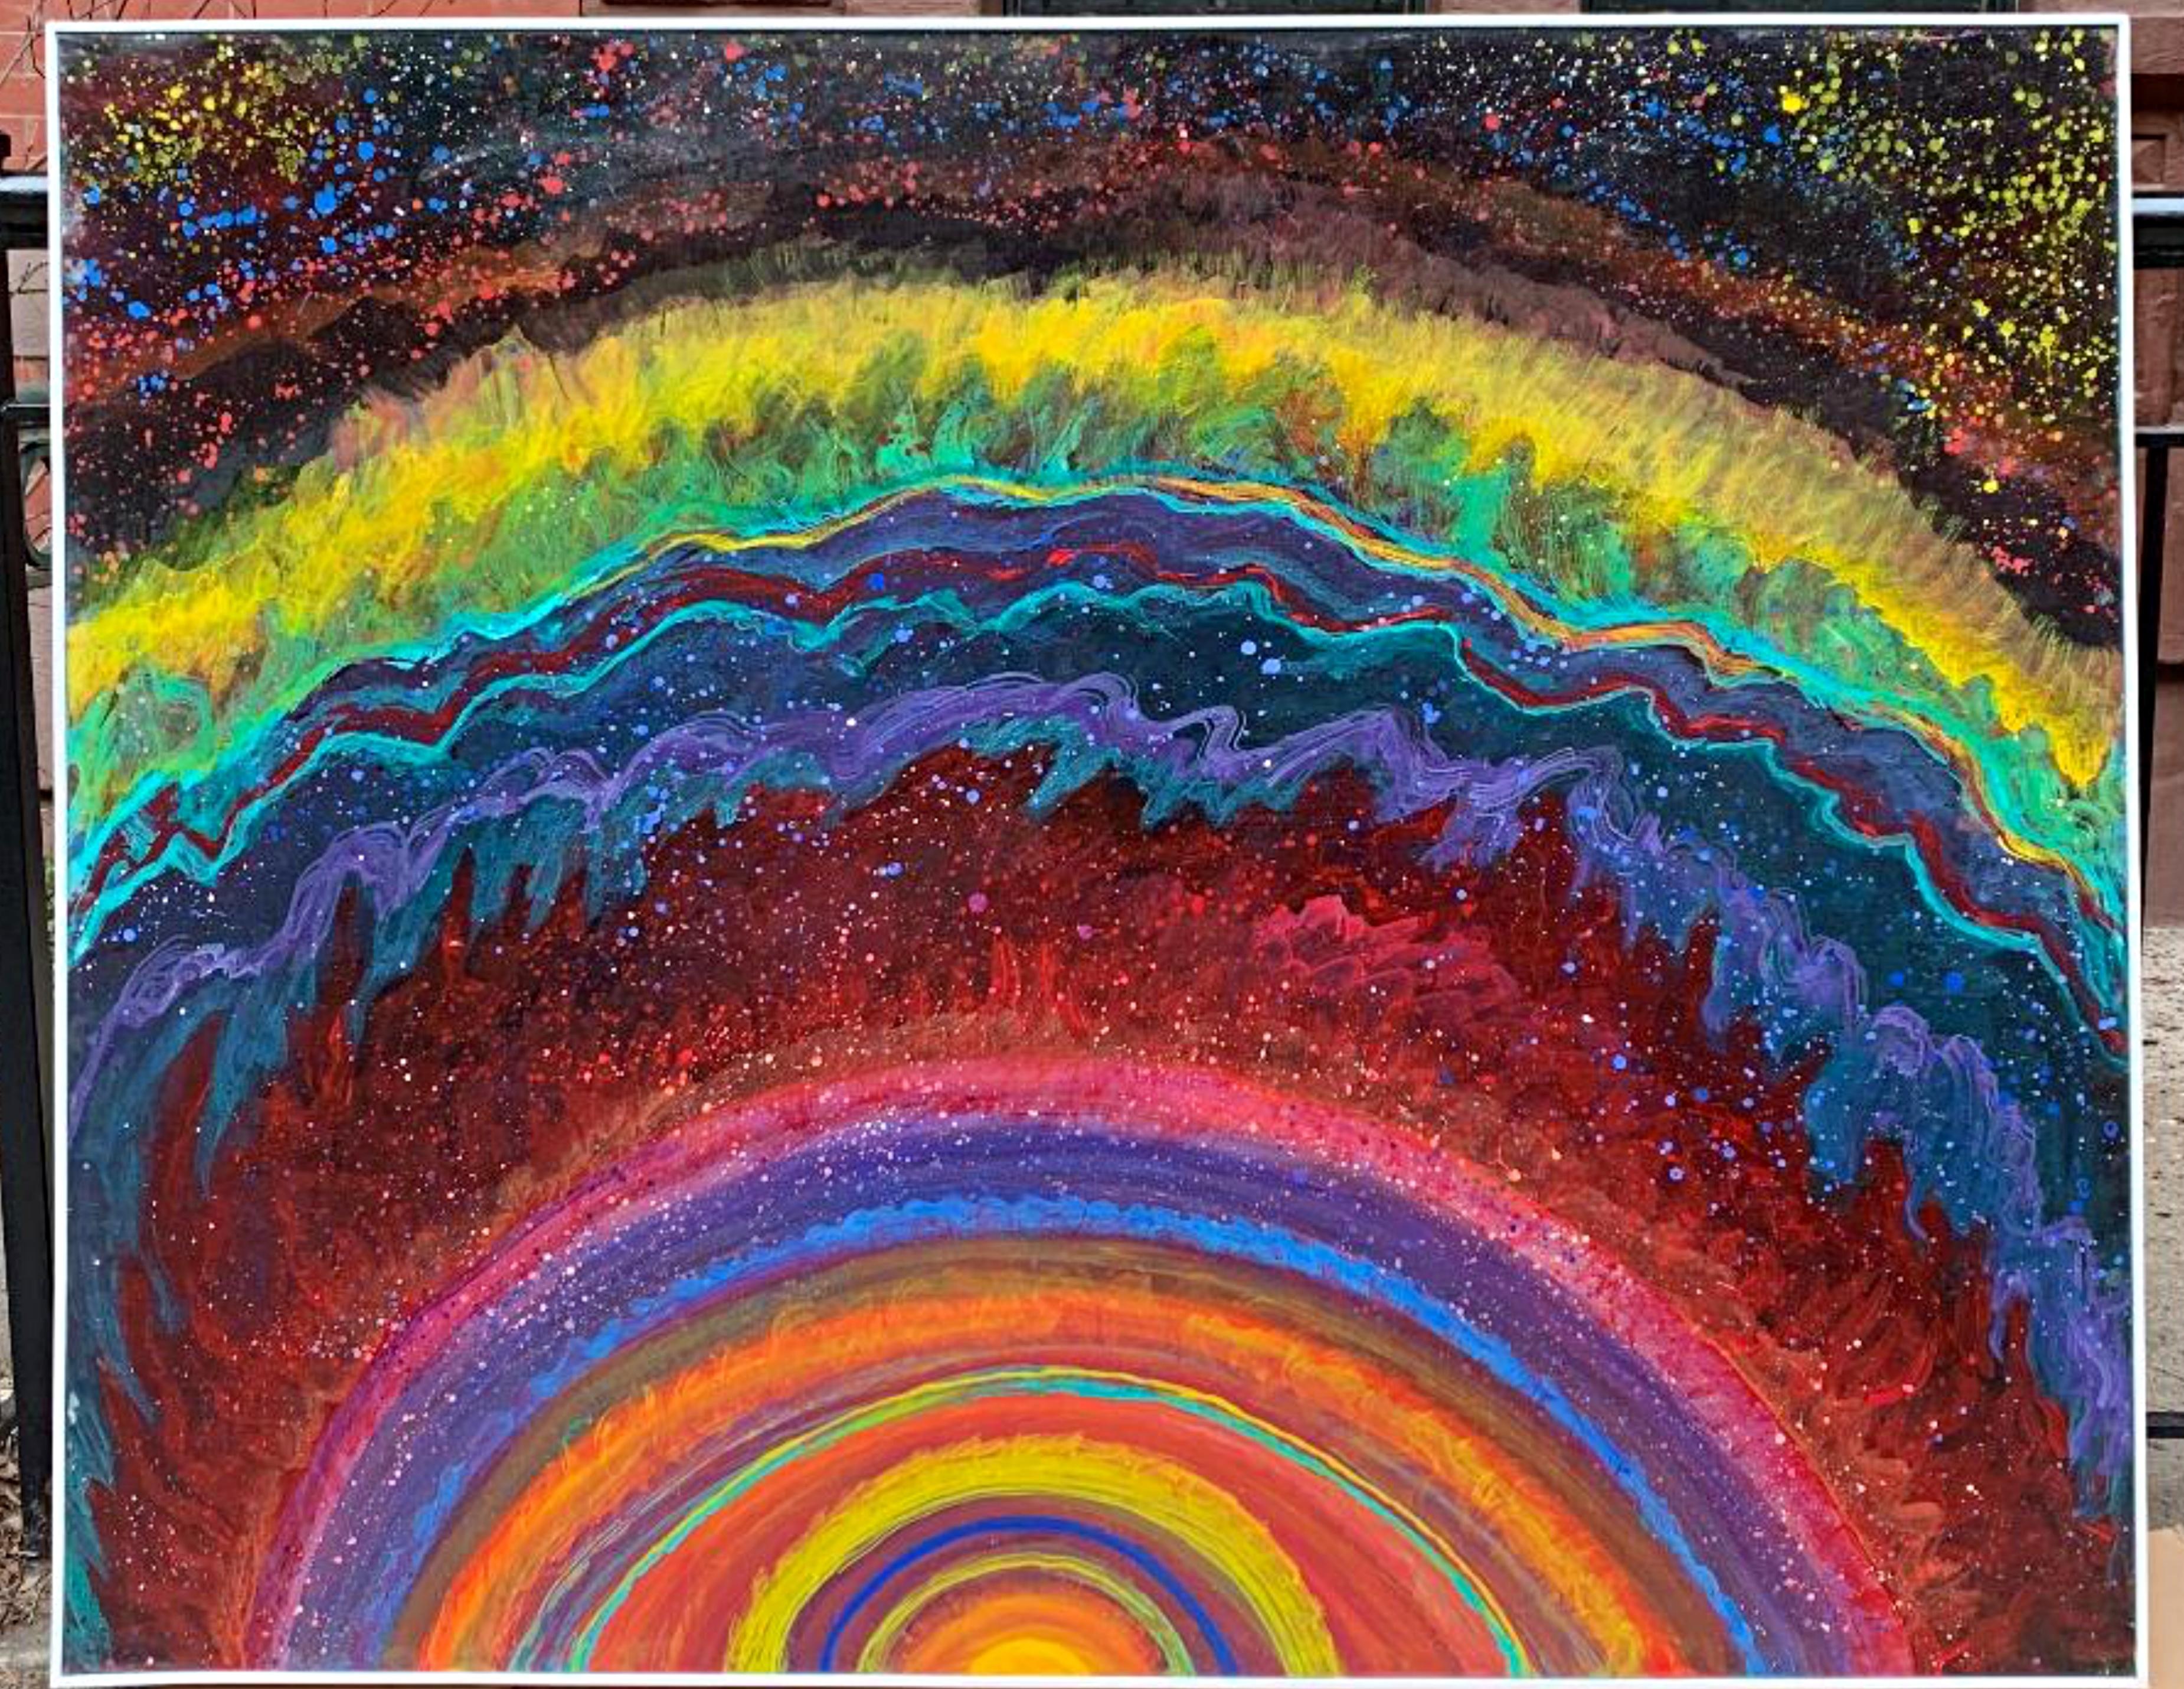 Gravity's Rainbow, peinture sur toile unique signée de la célèbre artiste féminine - Painting de Thelma Appel